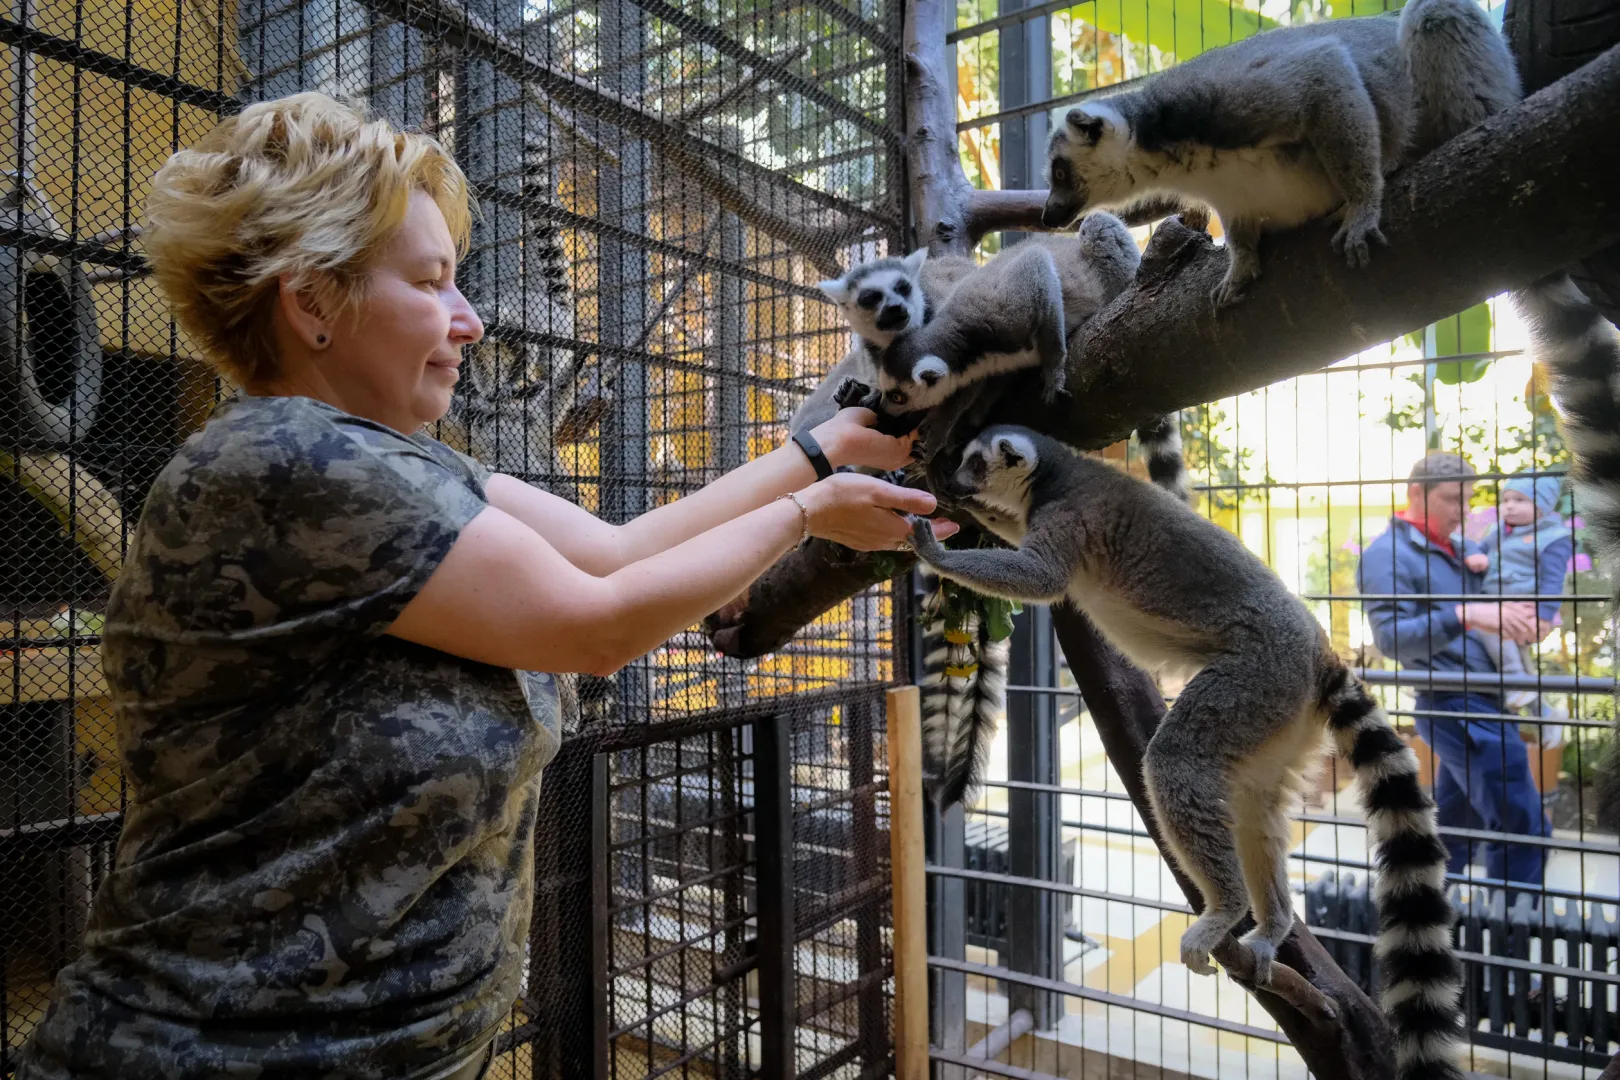 Török Zsuzsa állatgondozó a lemurokat (gyűrűskarkú makikat) eteti. Most már 13 lemurja van az állatkertnek, és jelenleg egy kifutót terveznek a majmok számára – Fotó: Márkos Tamás/Transtelex